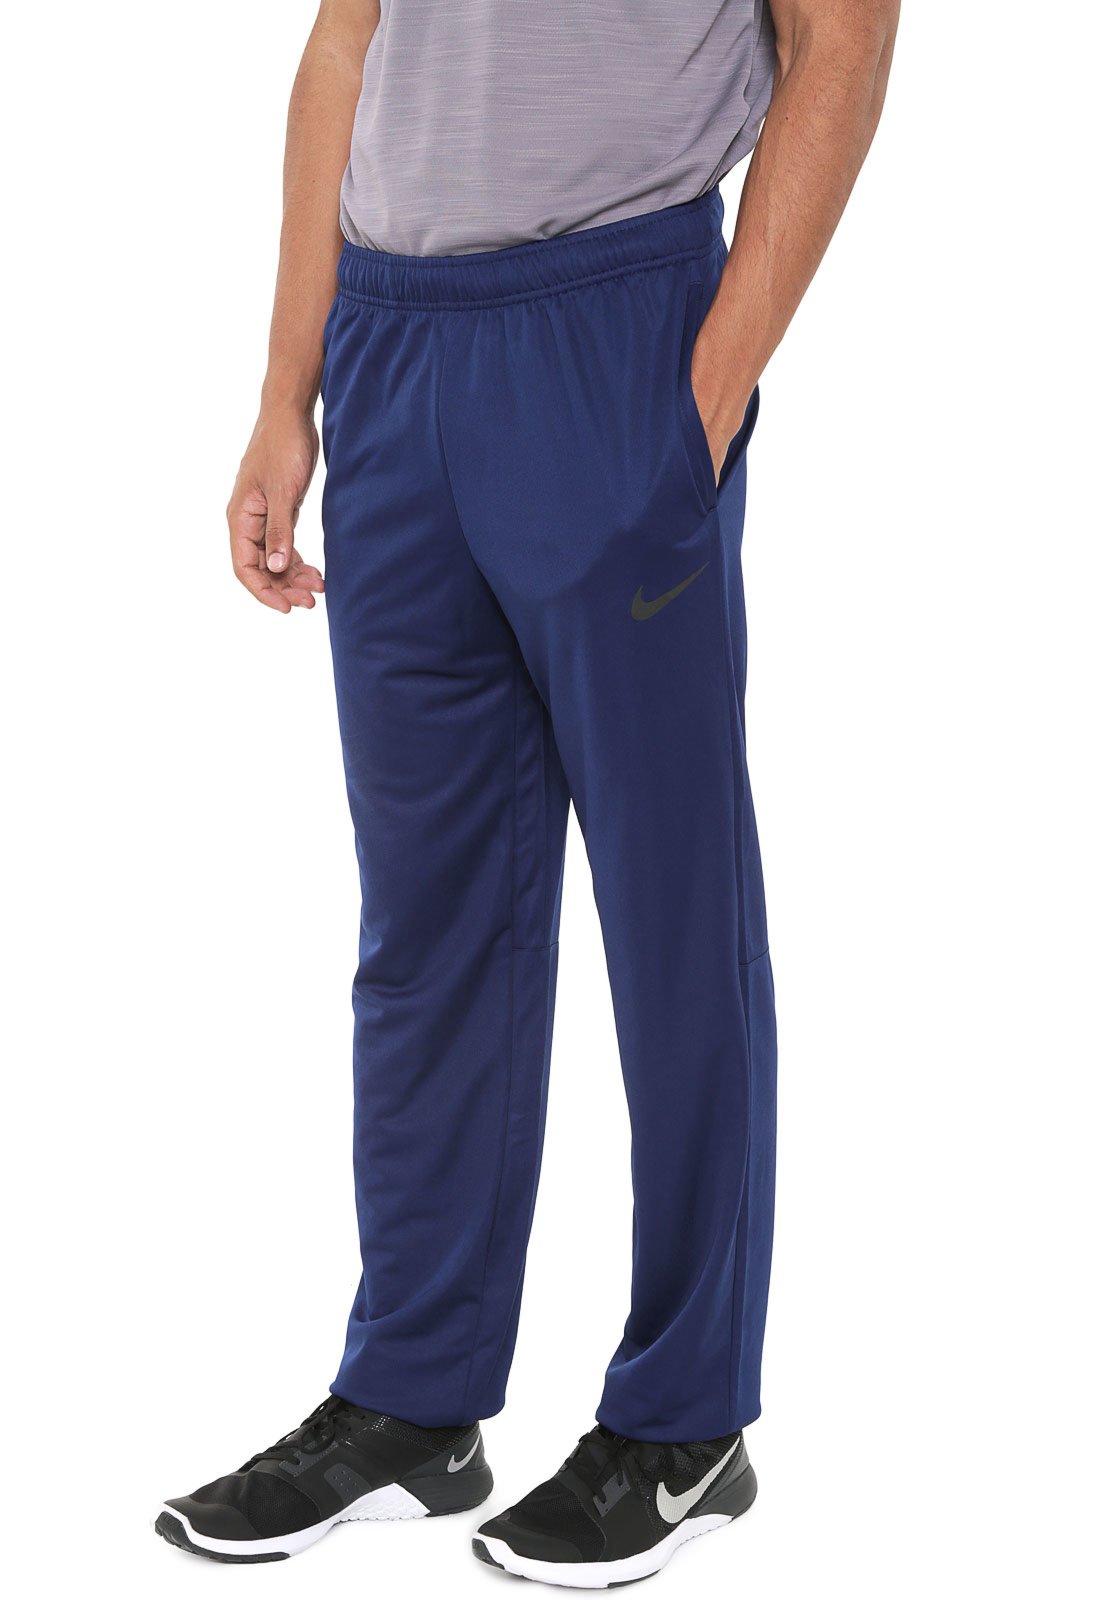 Calça Nike Reta M Nk Pant Epic Knit Azul Marinho - Compre Agora